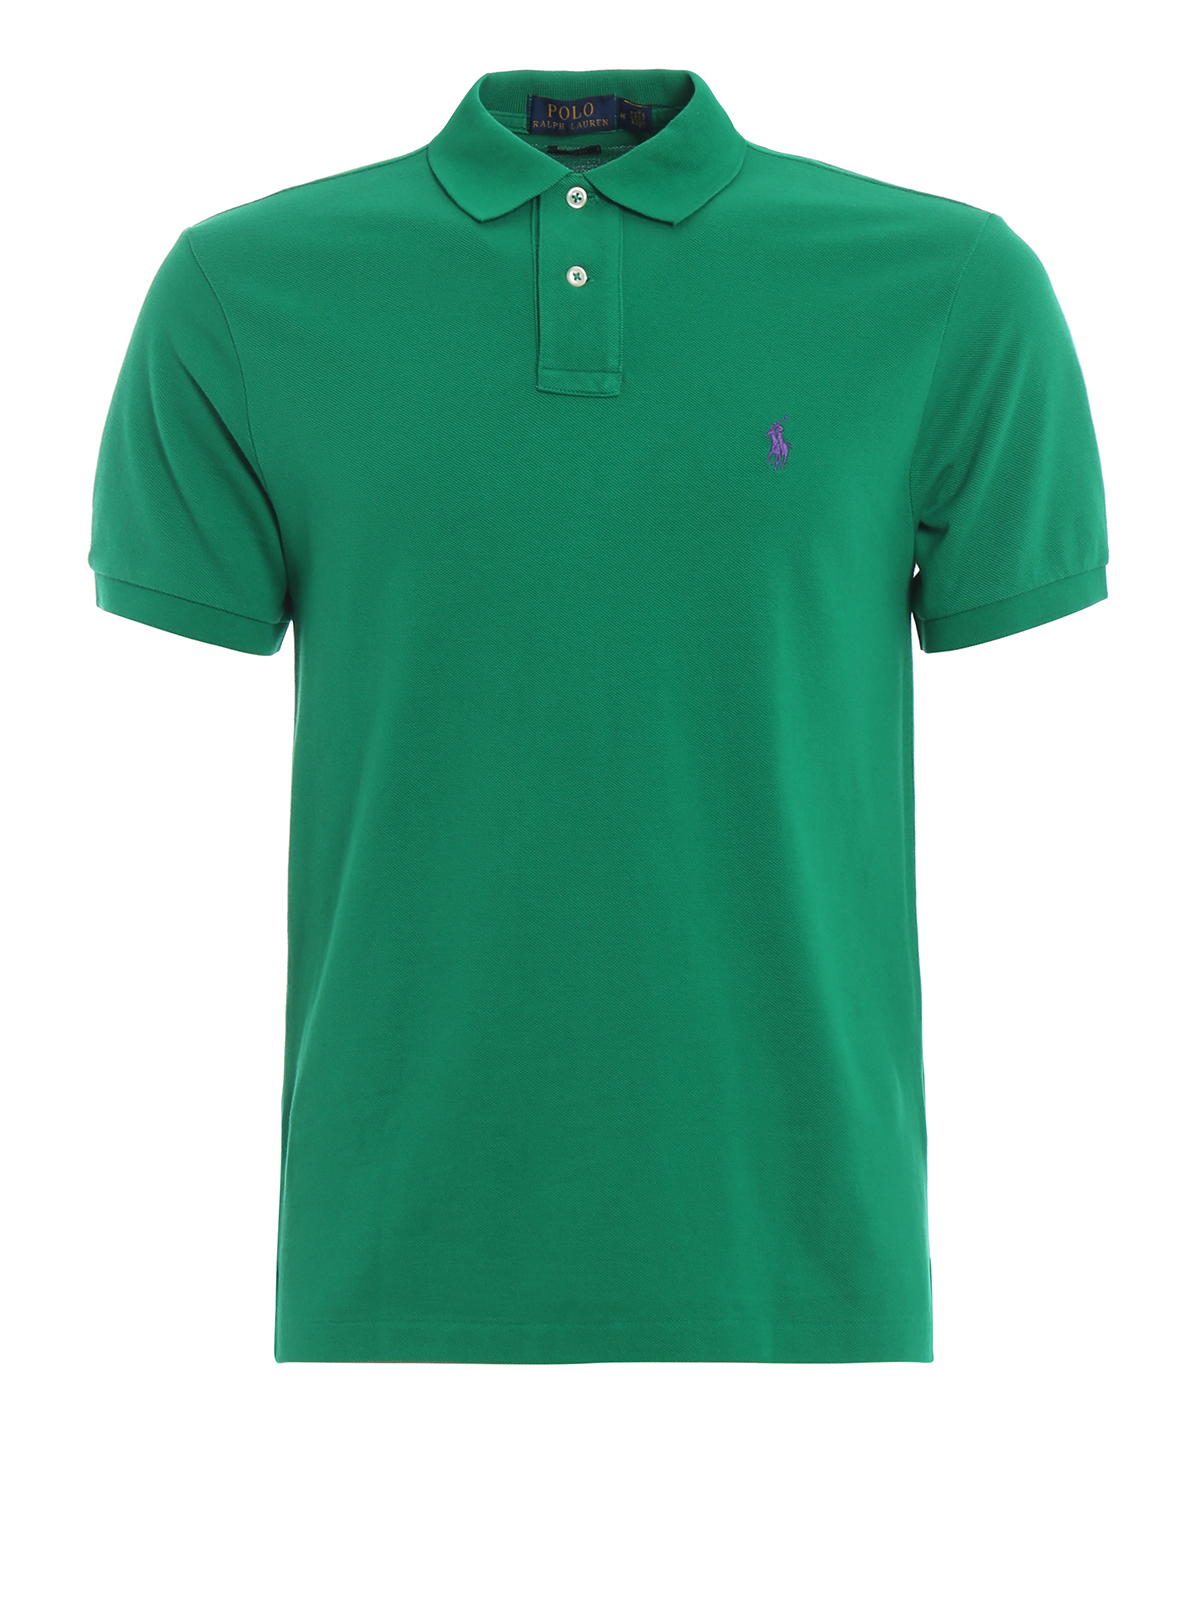 Classic green pique cotton polo shirt 